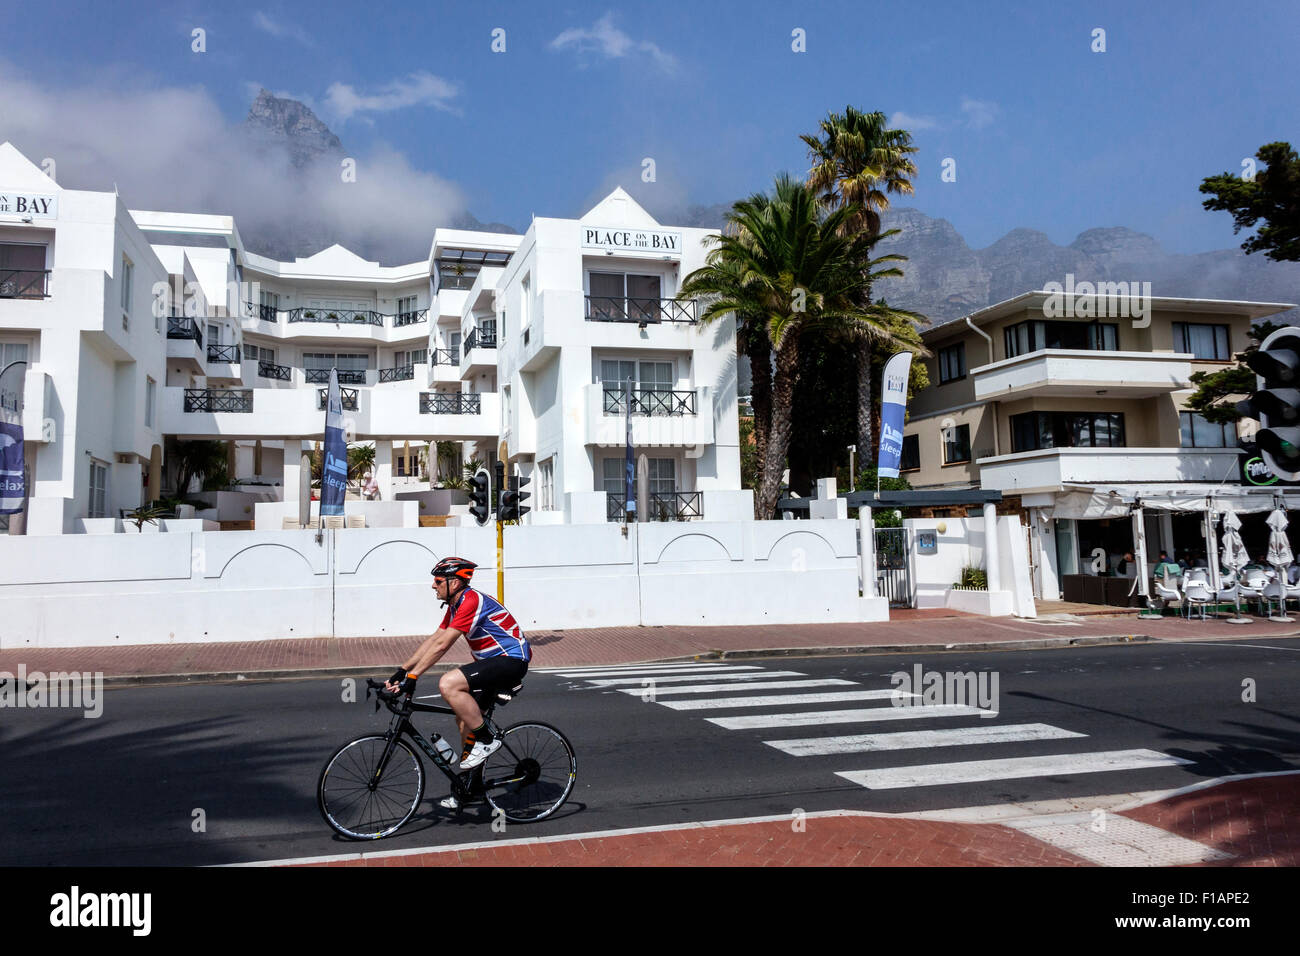 Cape Town Afrique du Sud, camps Bay, Victoria Road, Table Mountain National Park, place on the Bay, hôtel, brouillard, homme hommes homme, vélo, vélo, équitation, vélo, ri Banque D'Images